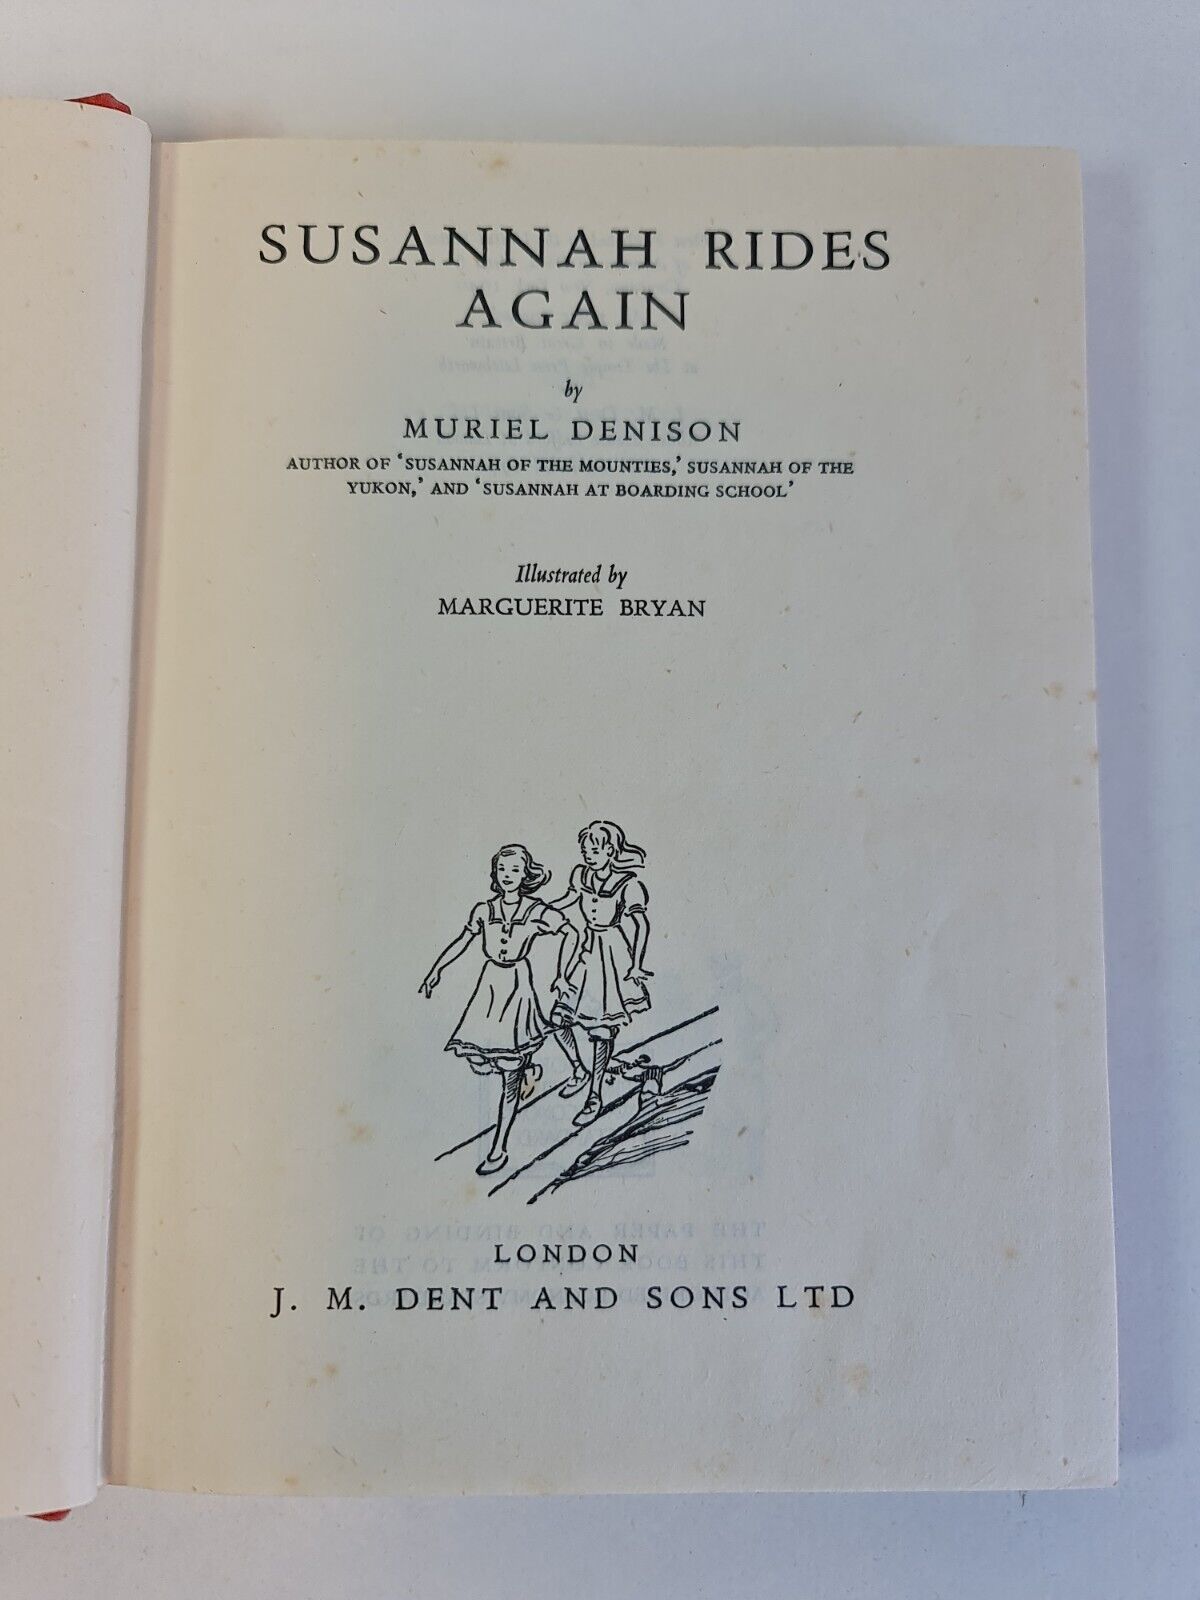 Susannah Rides Again by Muriel Denison (1942)